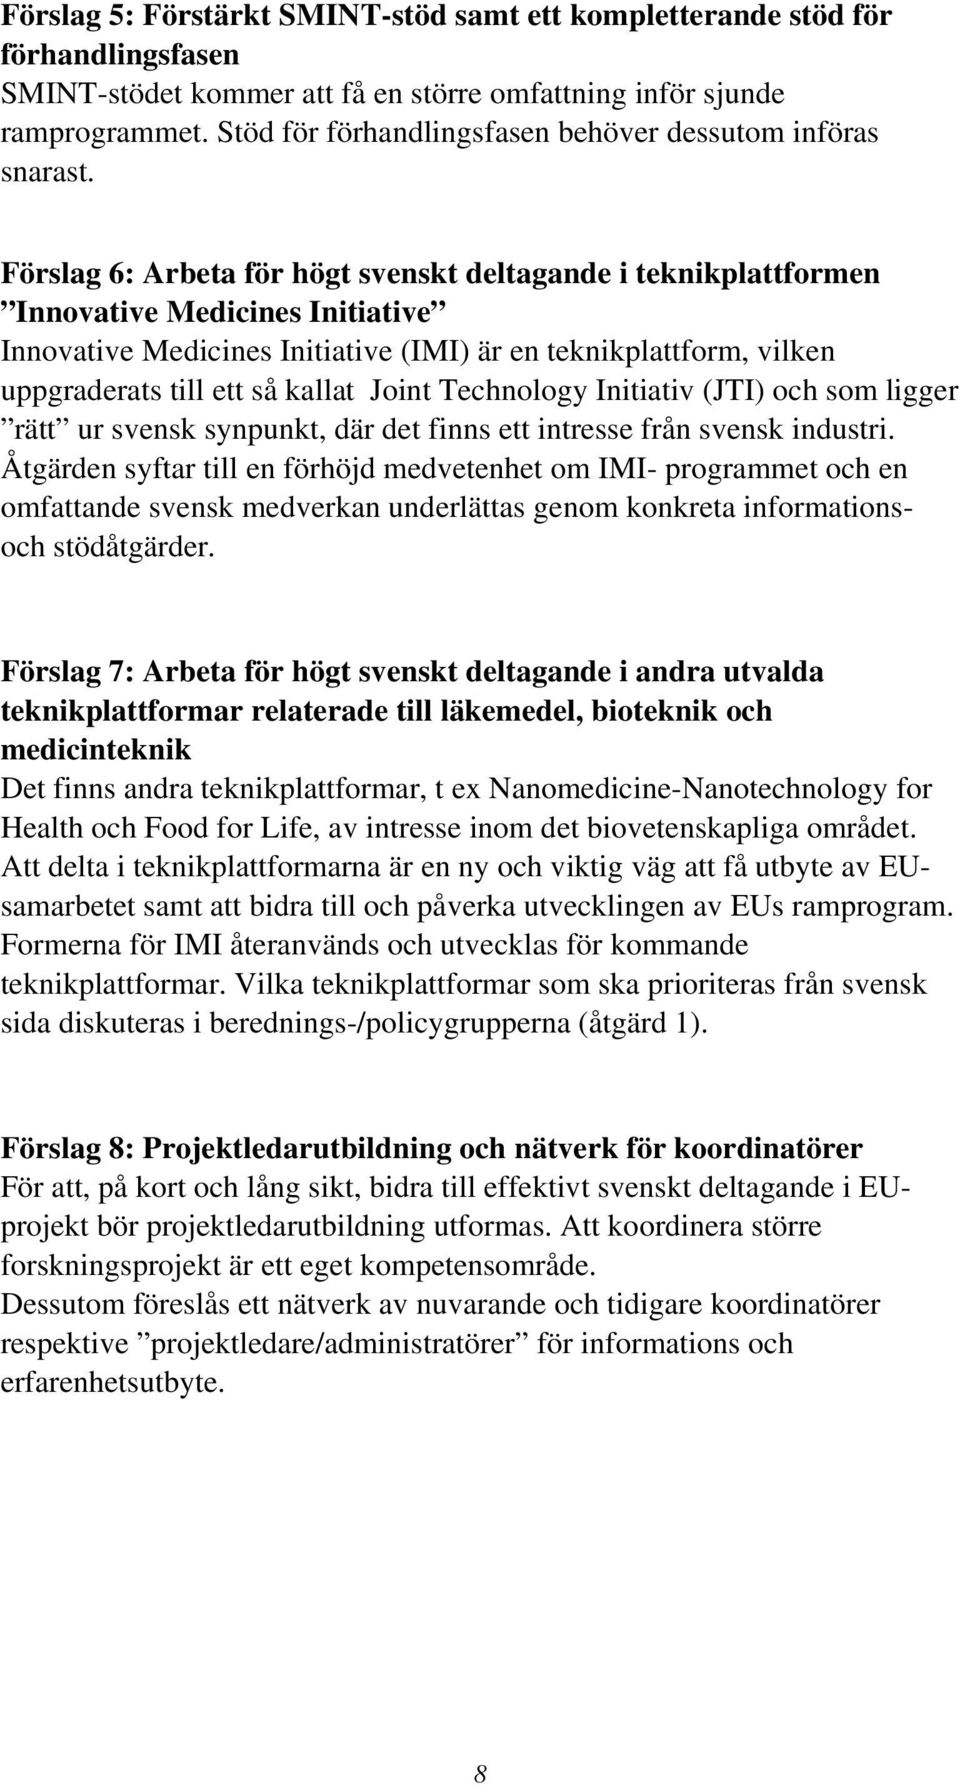 Förslag 6: Arbeta för högt svenskt deltagande i teknikplattformen Innovative Medicines Initiative Innovative Medicines Initiative (IMI) är en teknikplattform, vilken uppgraderats till ett så kallat